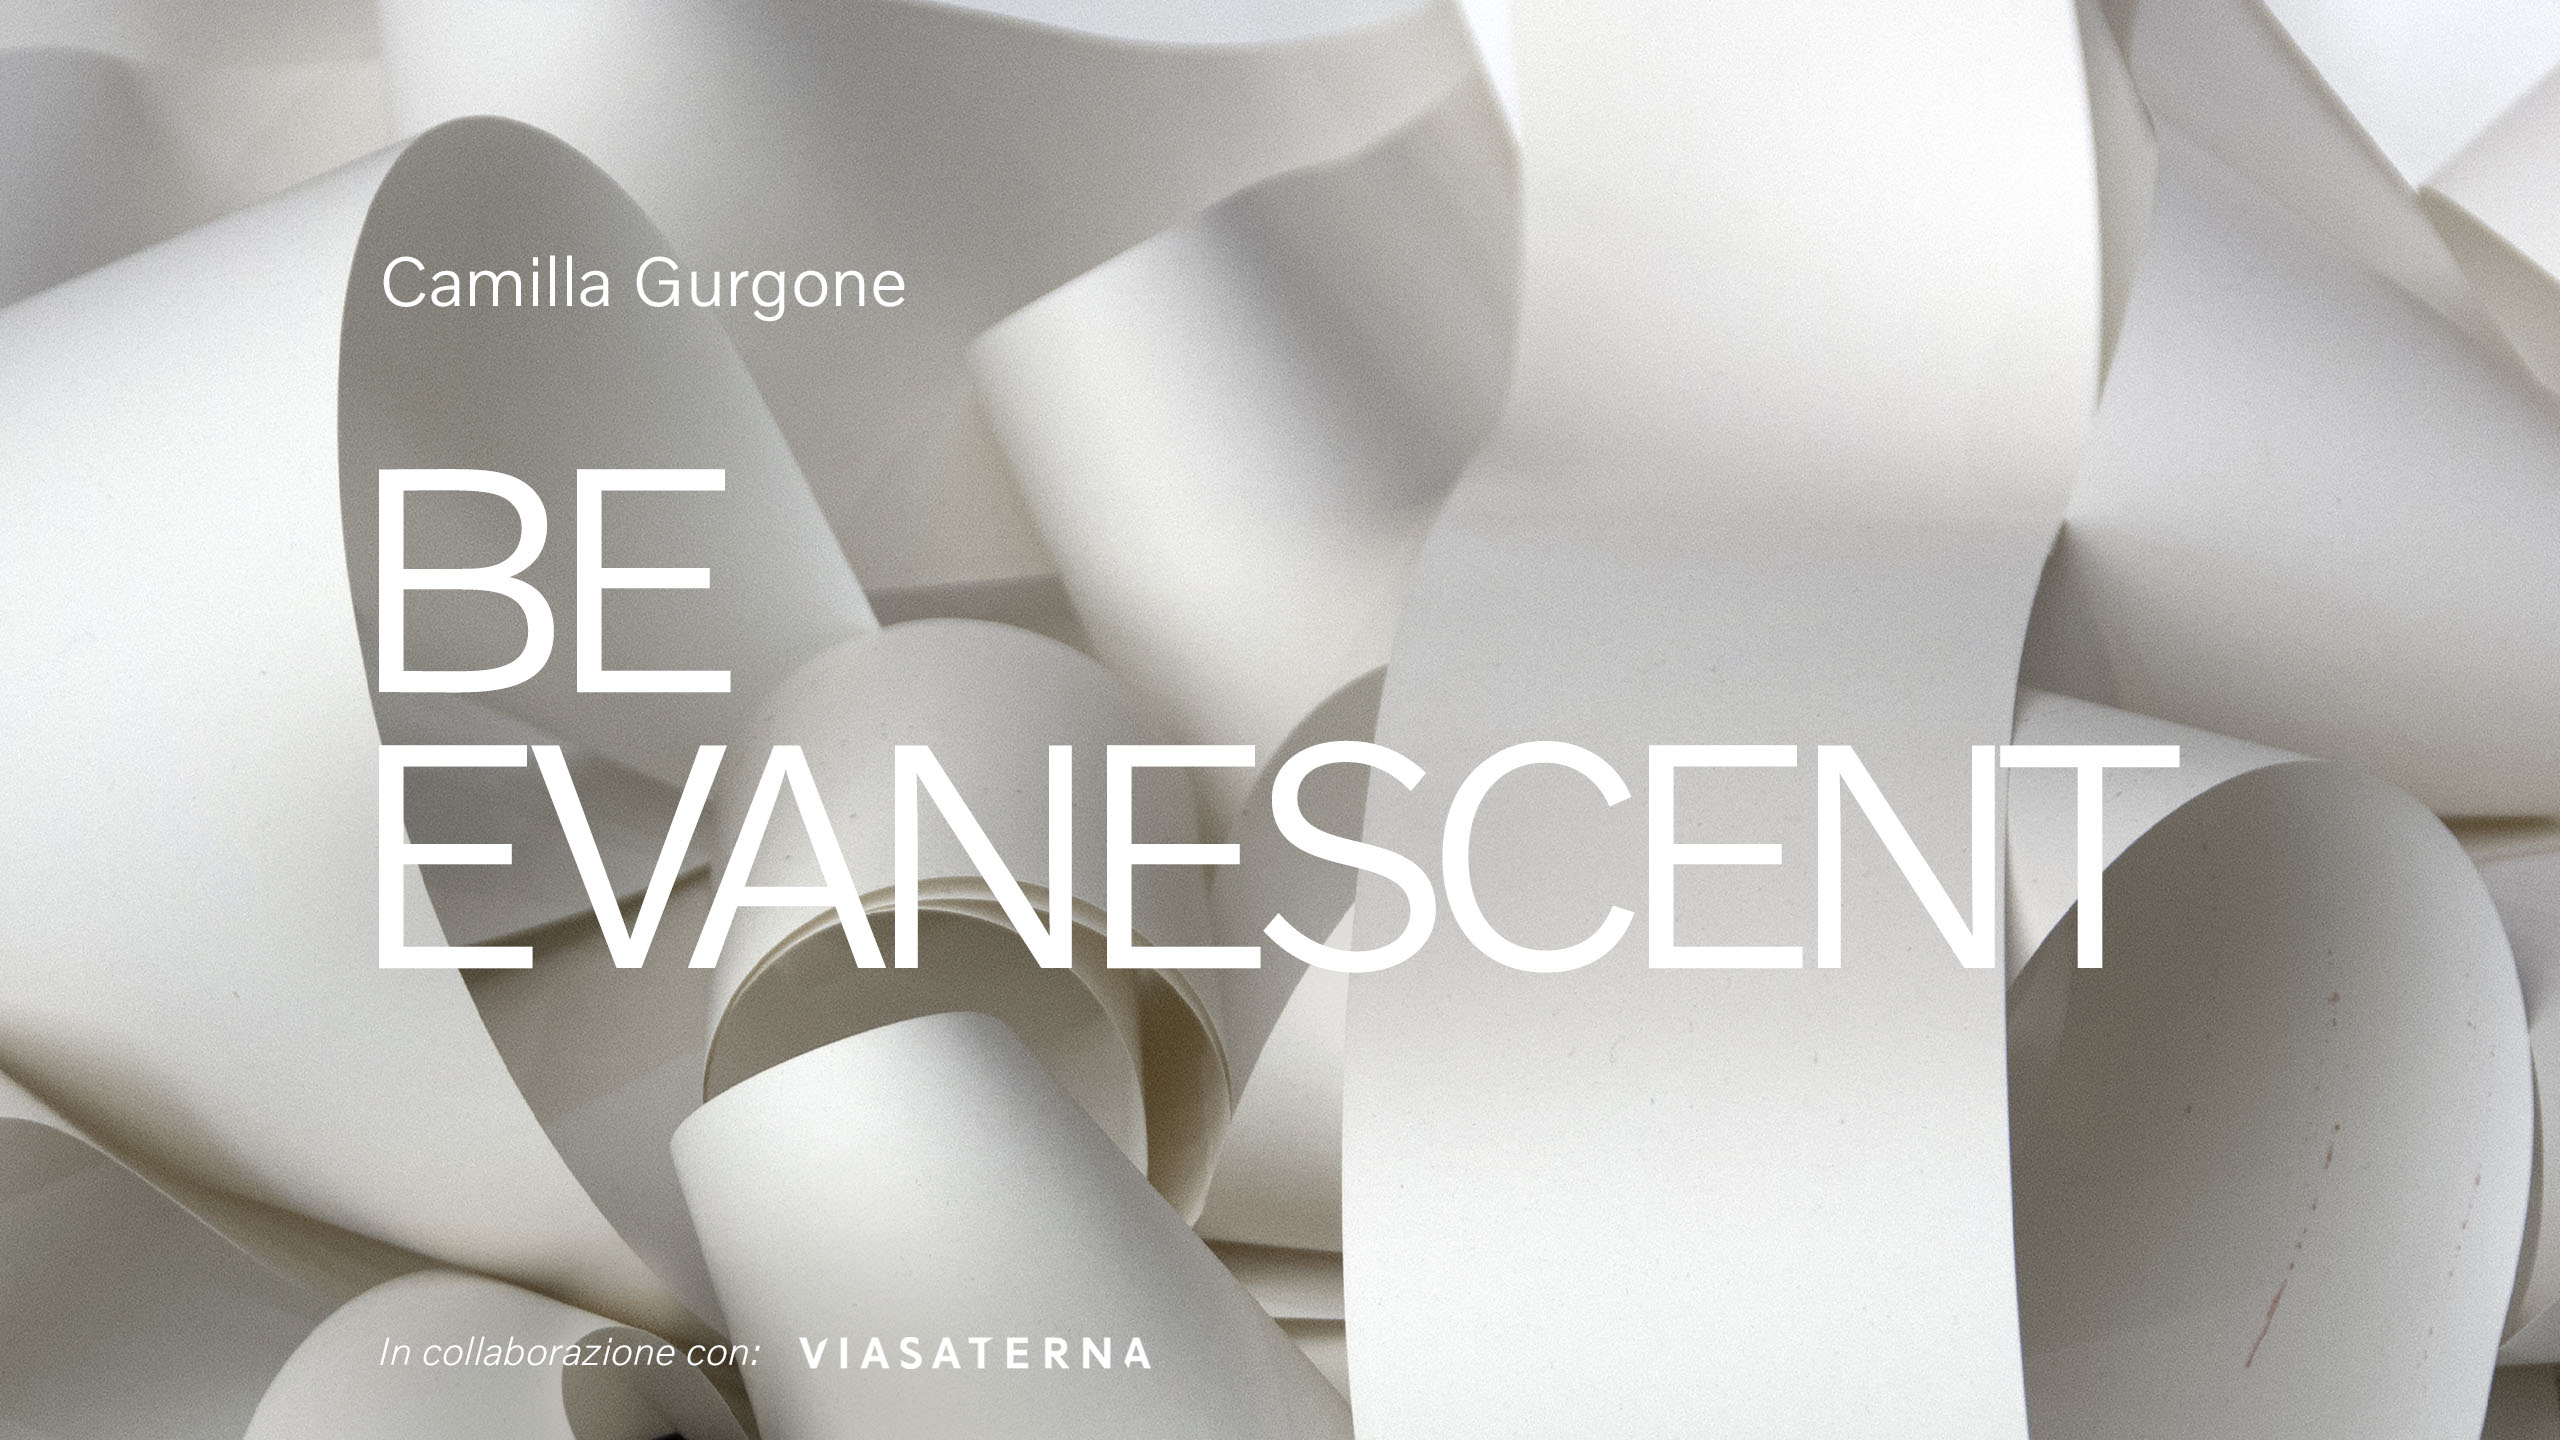 Volvo Studio Milano | Camilla Gurgone | BE EVANESCENT